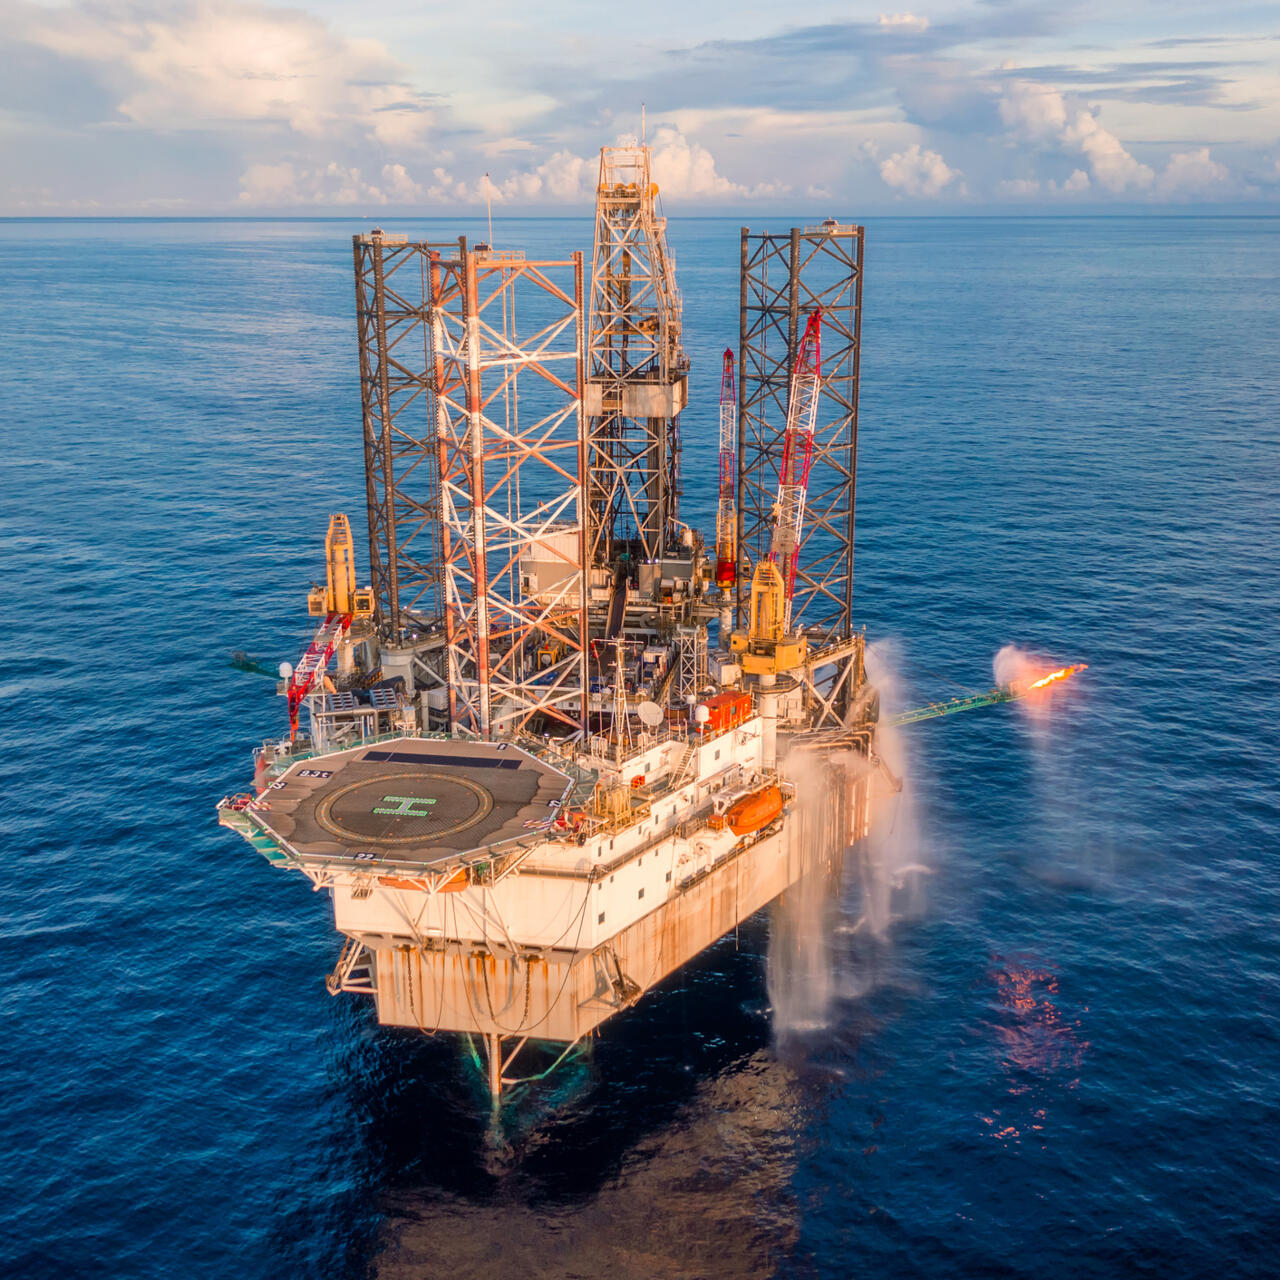 Contrats Hydrocarbures : Pourquoi le Sénégal doit renégocier, selon le DG de Petrosen Holding